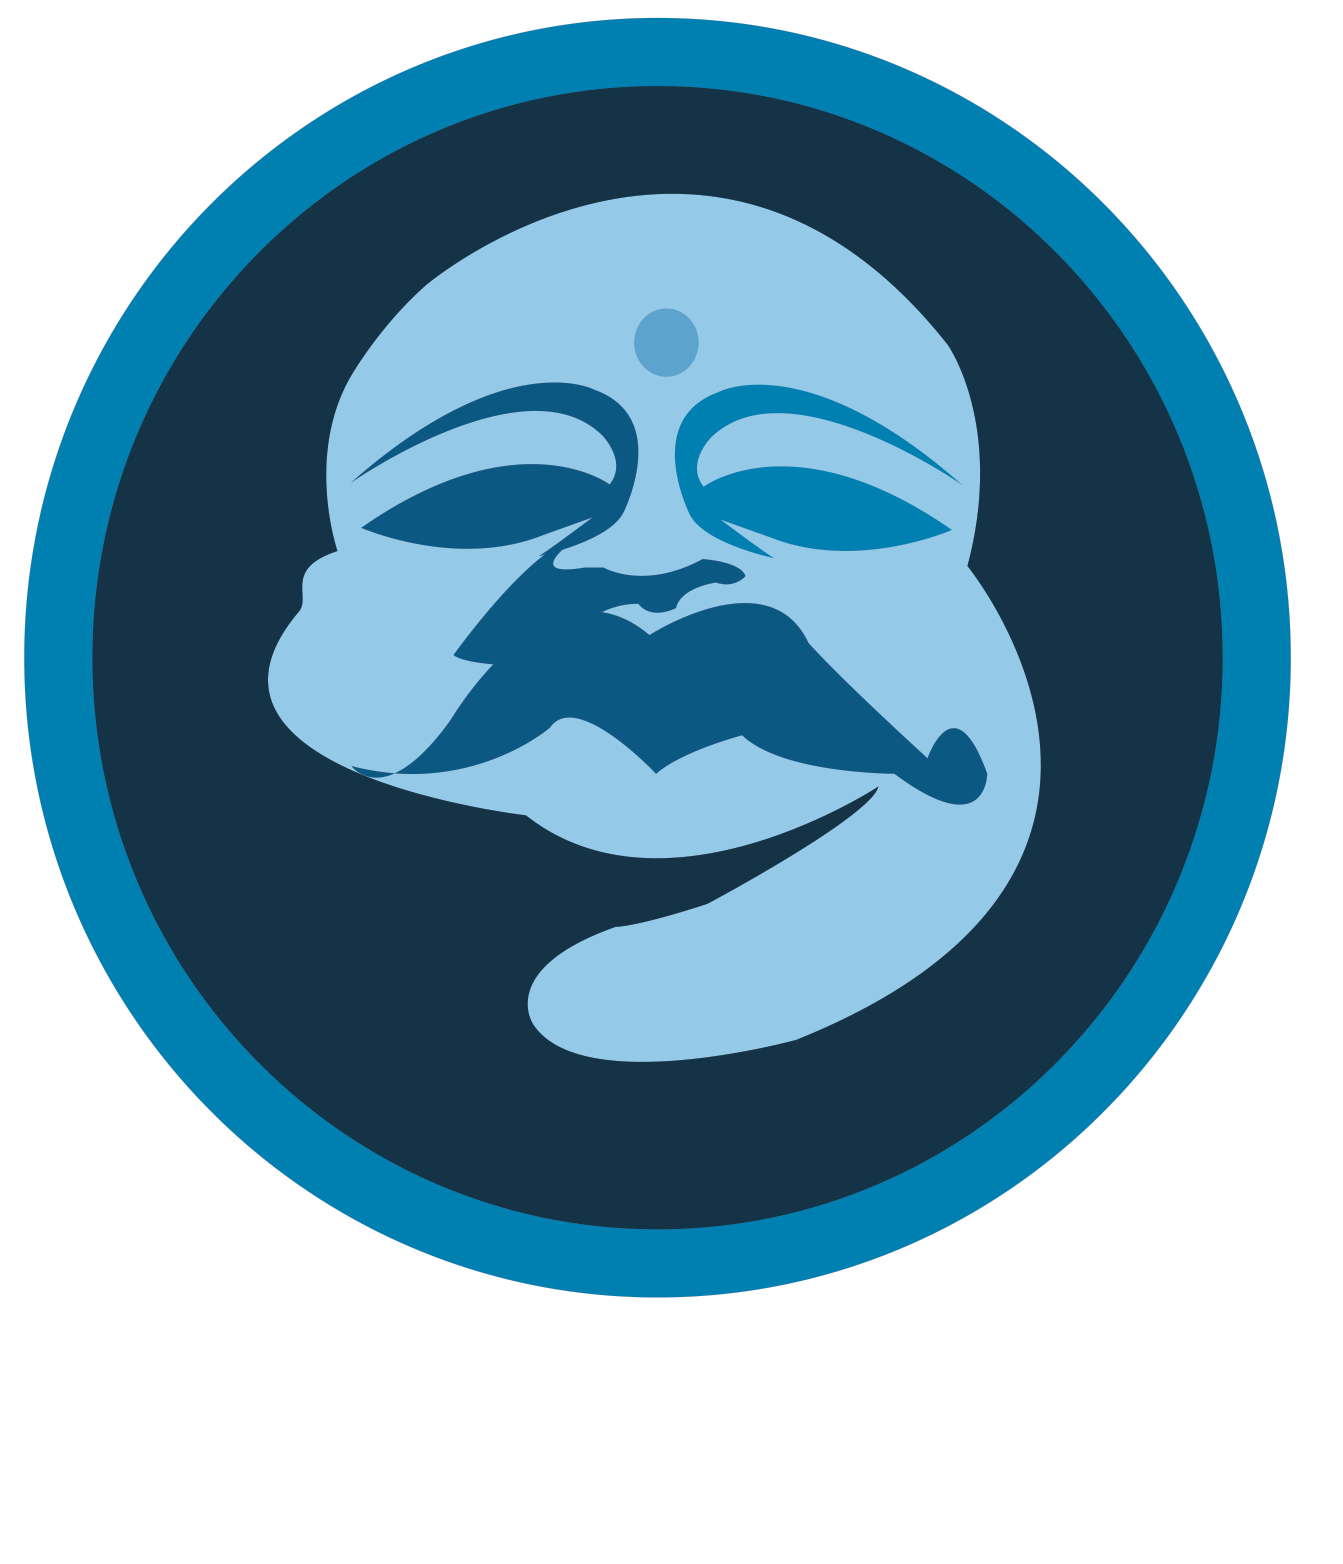 Phat Buddha